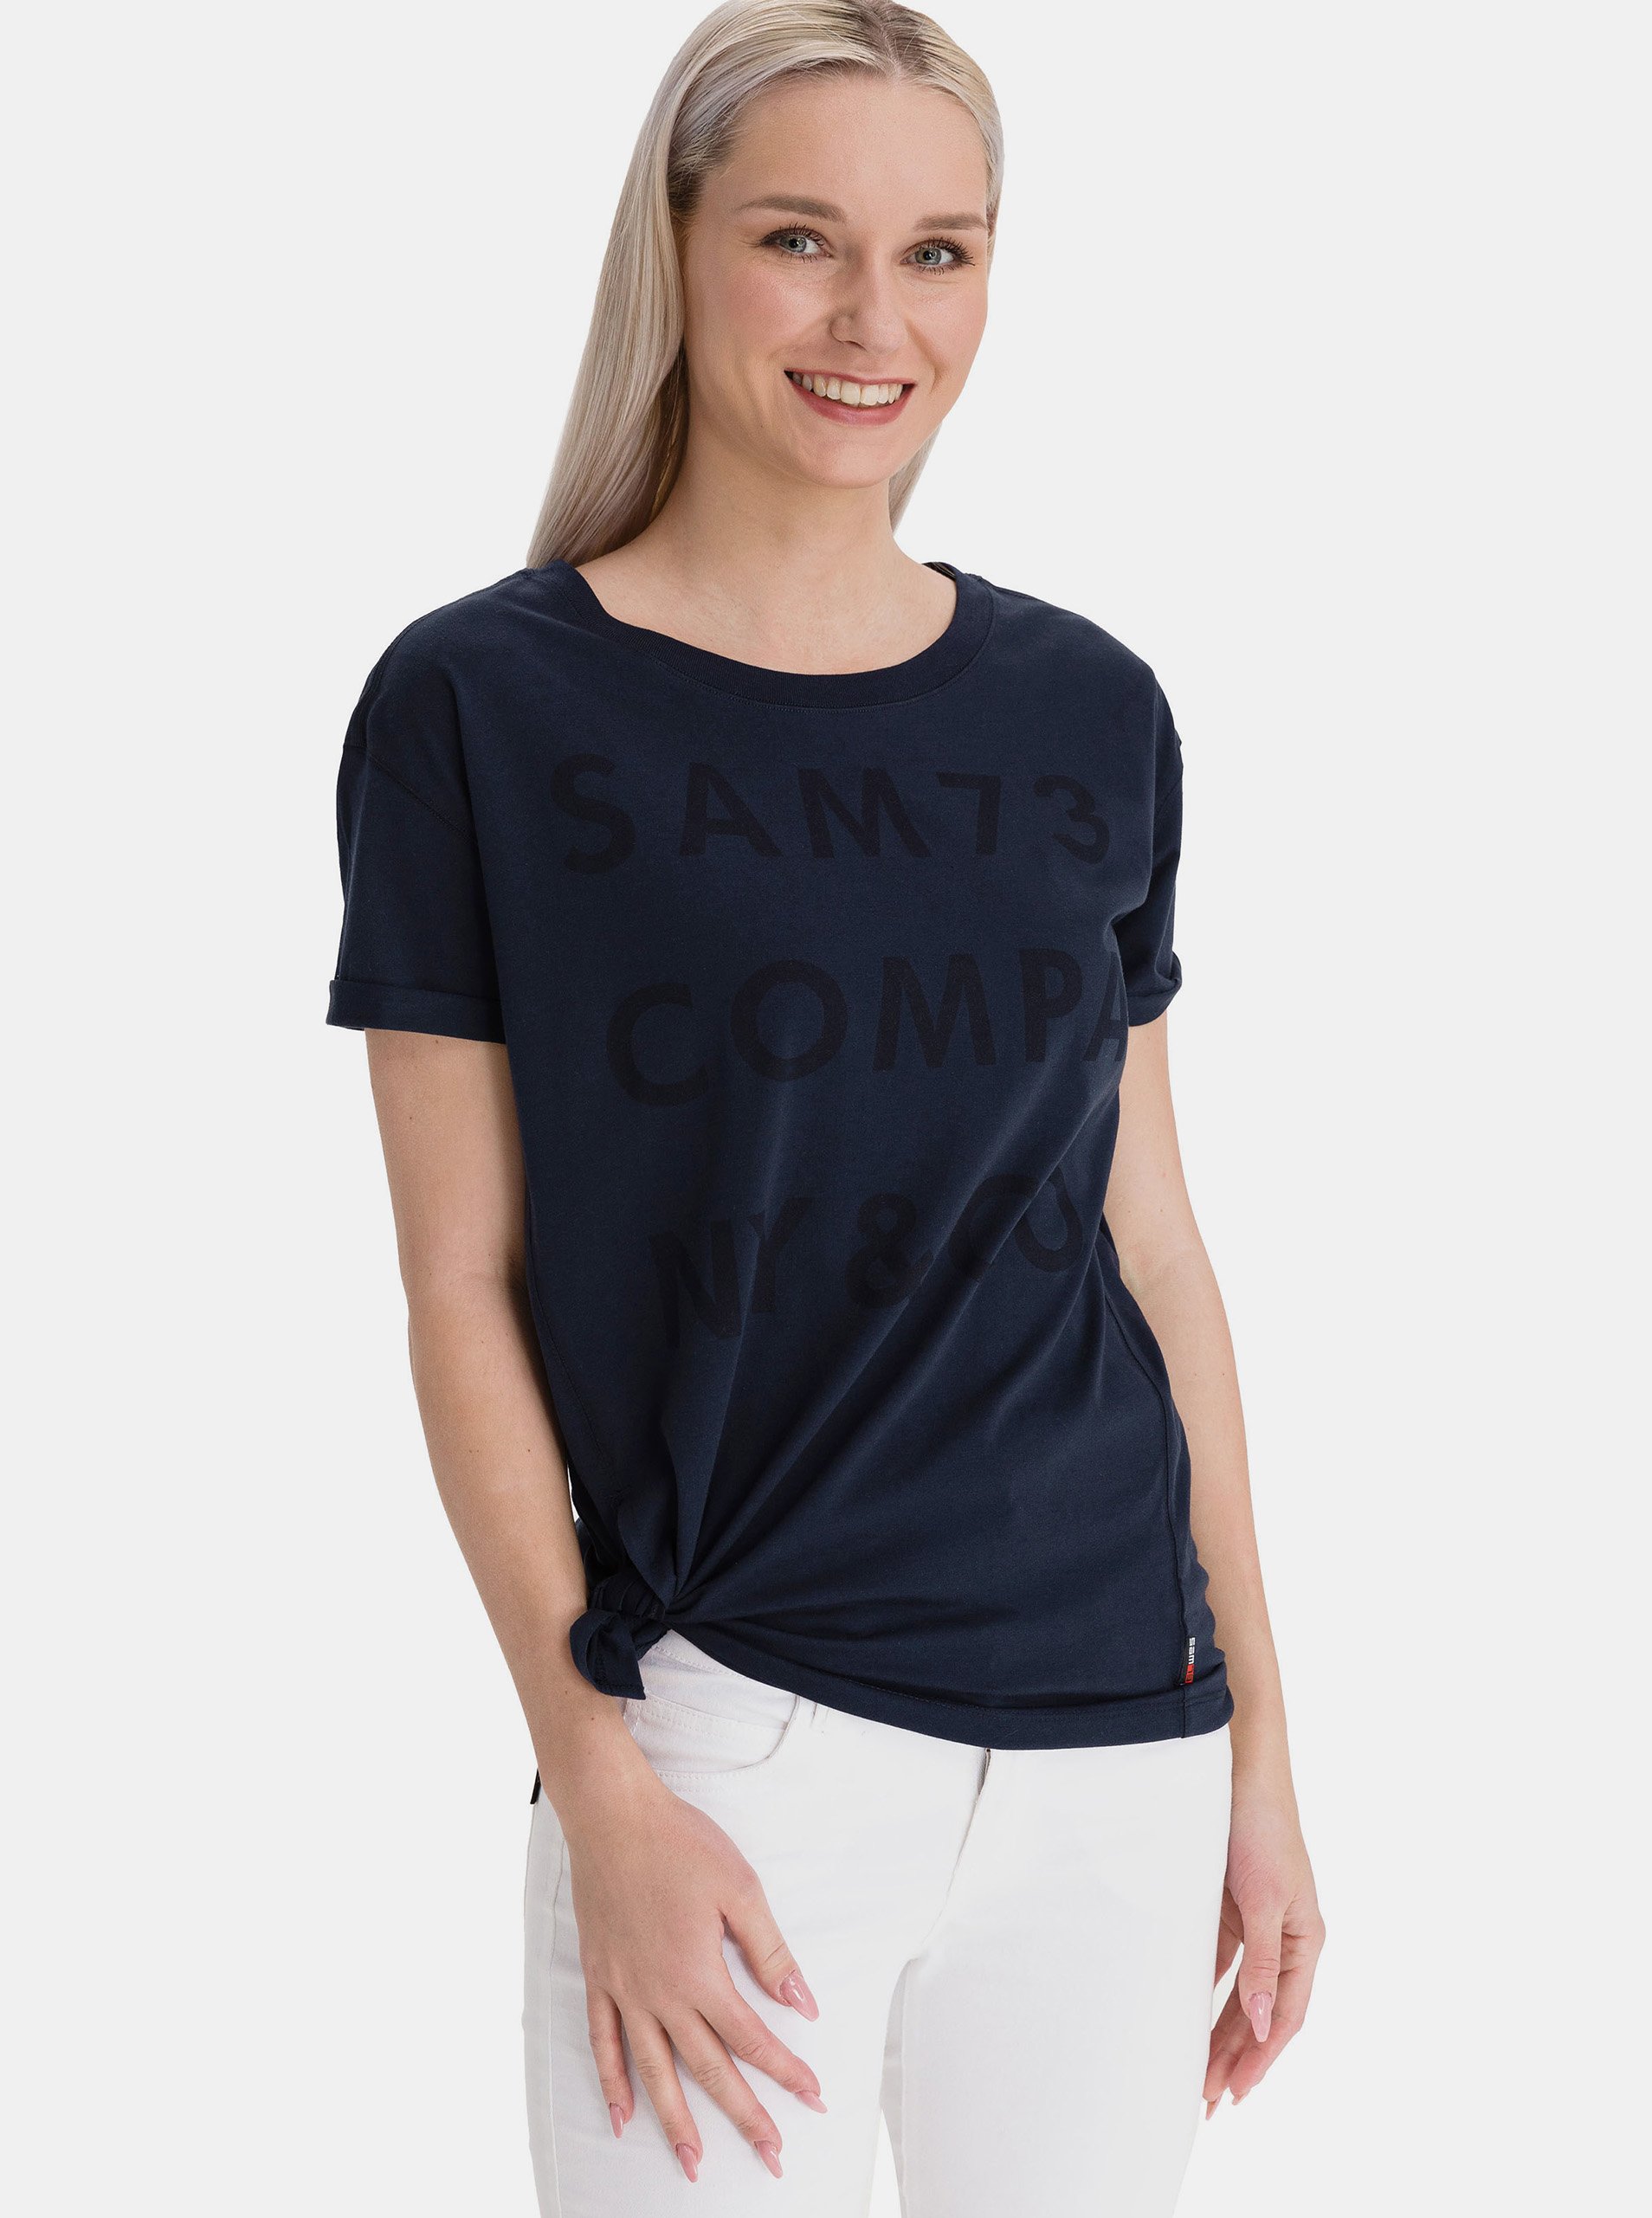 Lacno Tmavomodré dámske voľné tričko s potlačou SAM 73